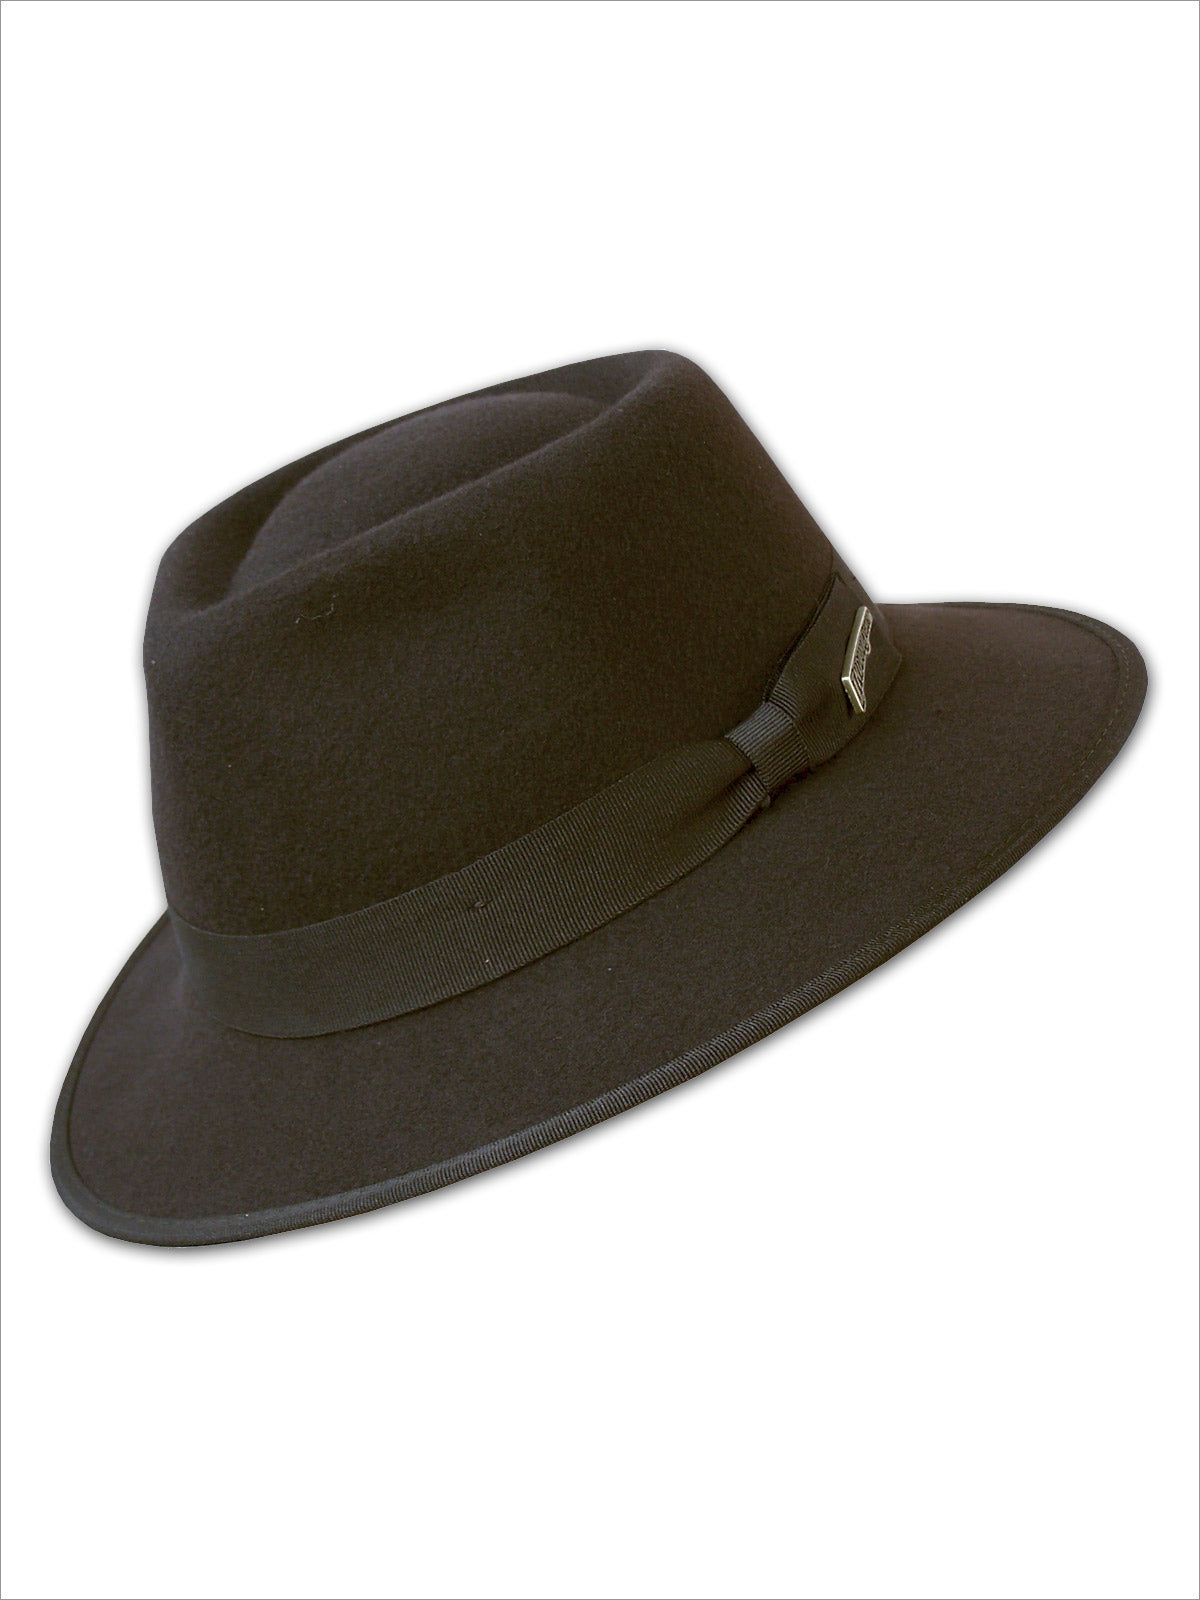 Hats - Dorfman Pacific Winter Hat